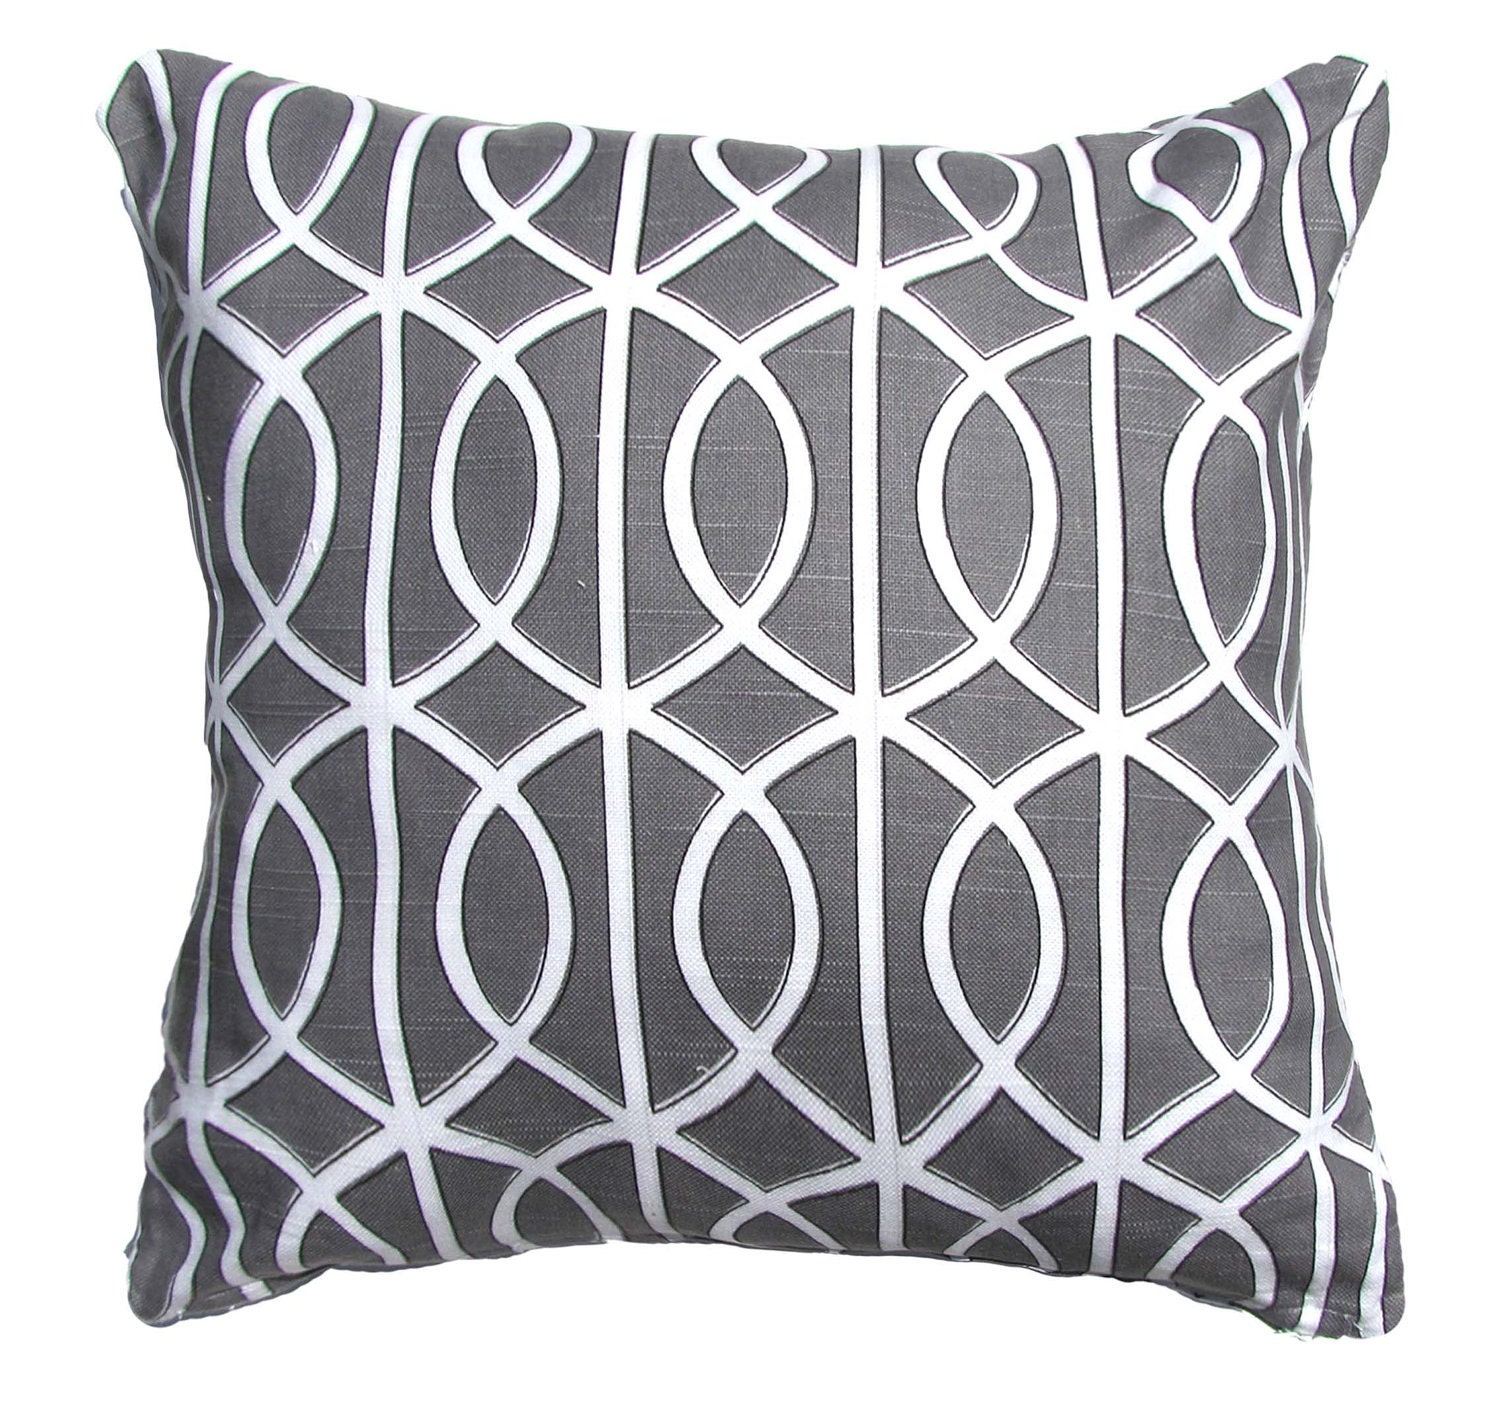 Graytrellis Pillow-throw Pillow-charcoal / White Lattice - Etsy